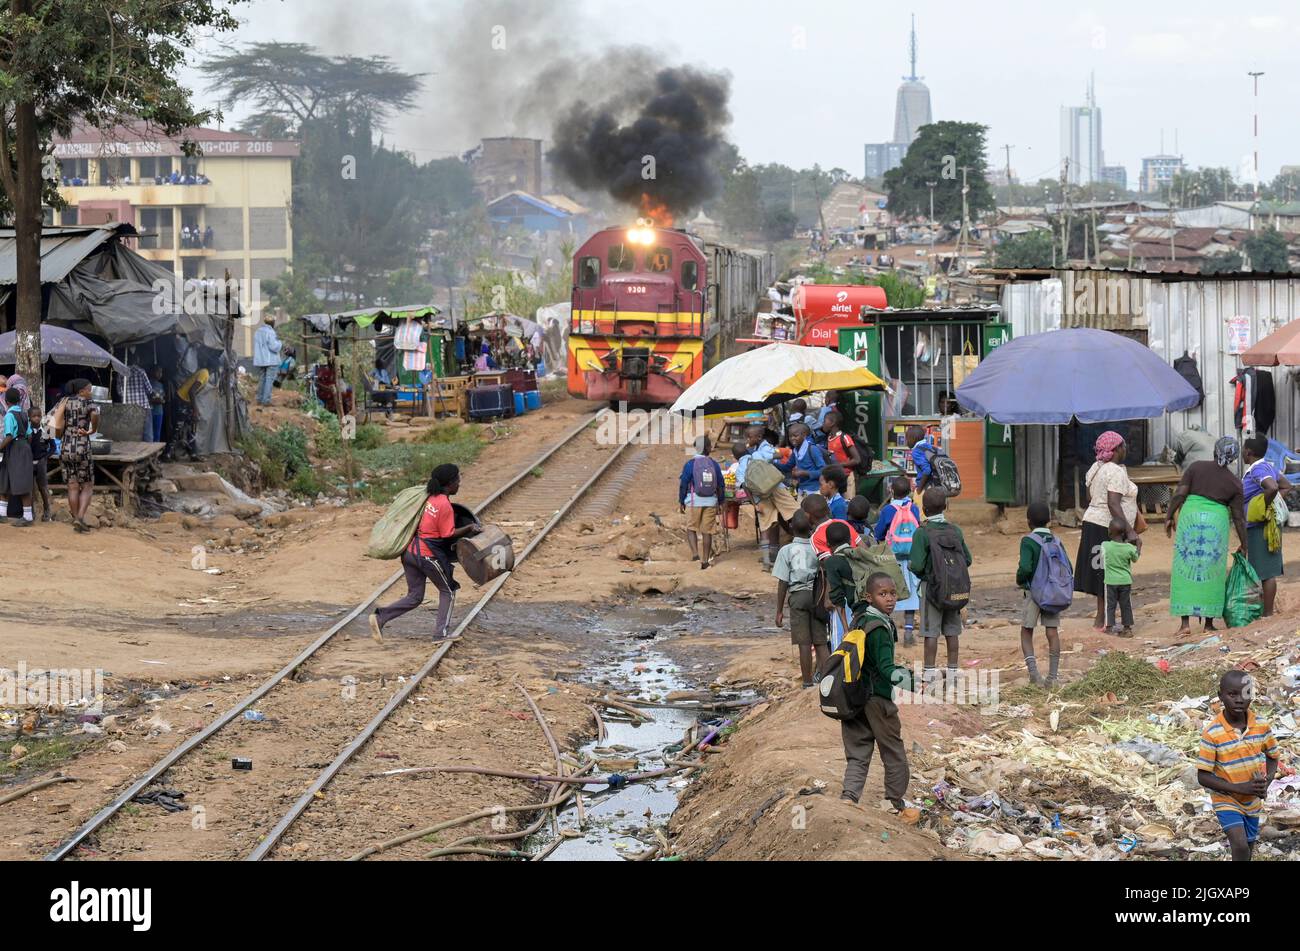 KENYA, Nairobi, Kibera slum, railway line, freight train, behind skyscraper in city center / KENIA, Nairobi, Kibera Slum, Bahnlinie, Güterzug Stock Photo